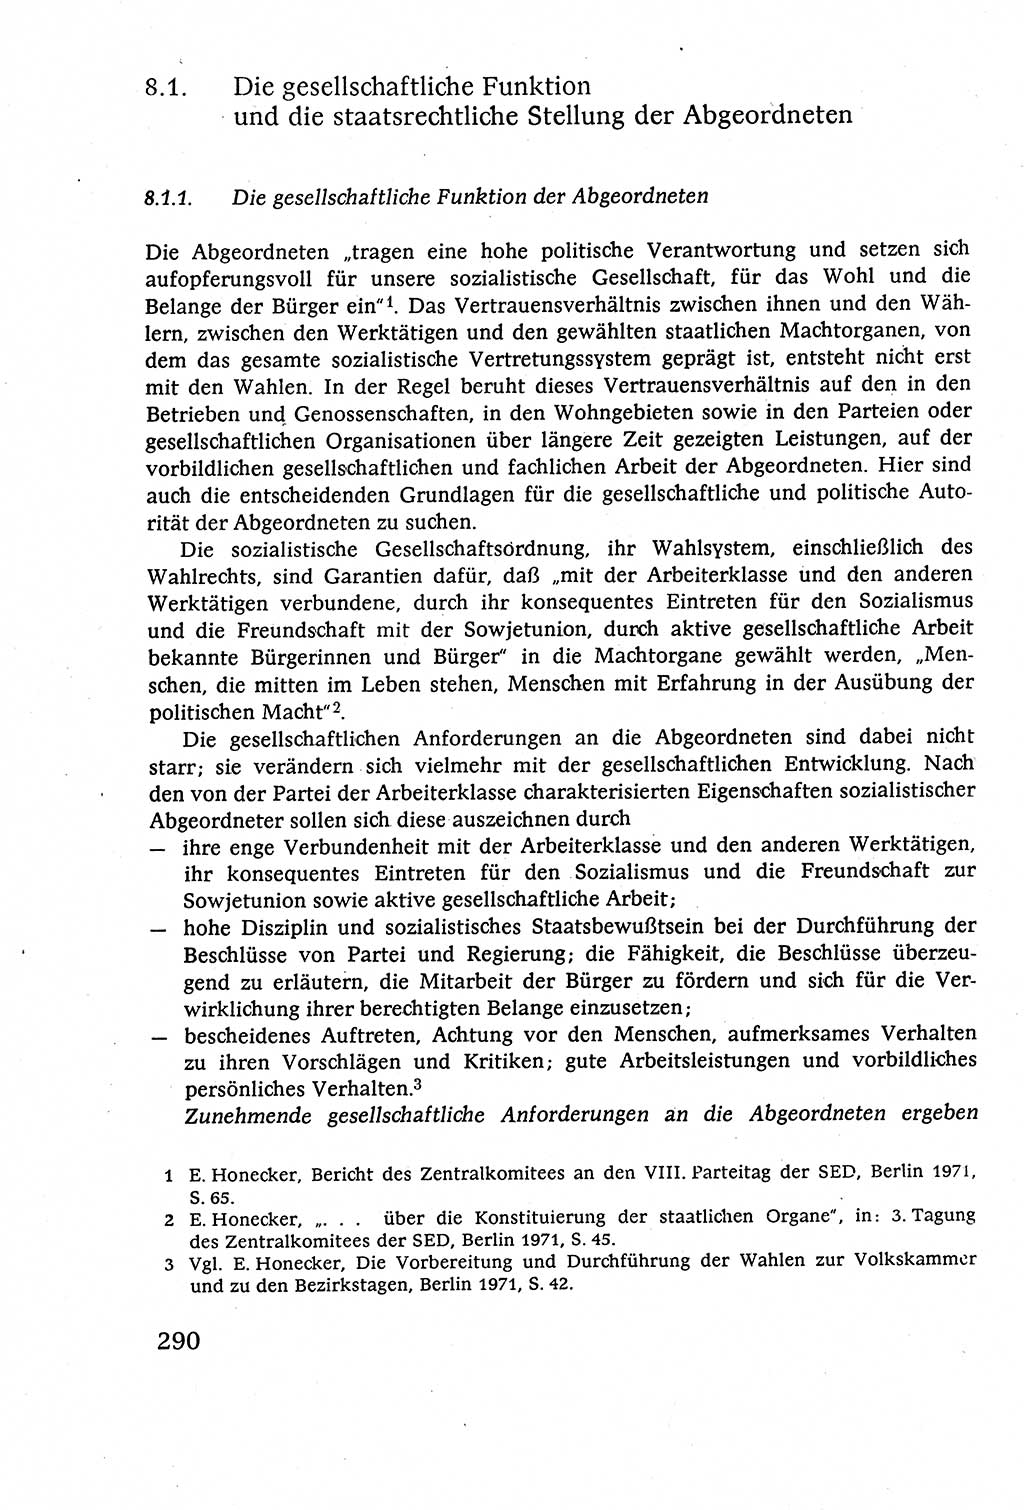 Staatsrecht der DDR (Deutsche Demokratische Republik), Lehrbuch 1977, Seite 290 (St.-R. DDR Lb. 1977, S. 290)